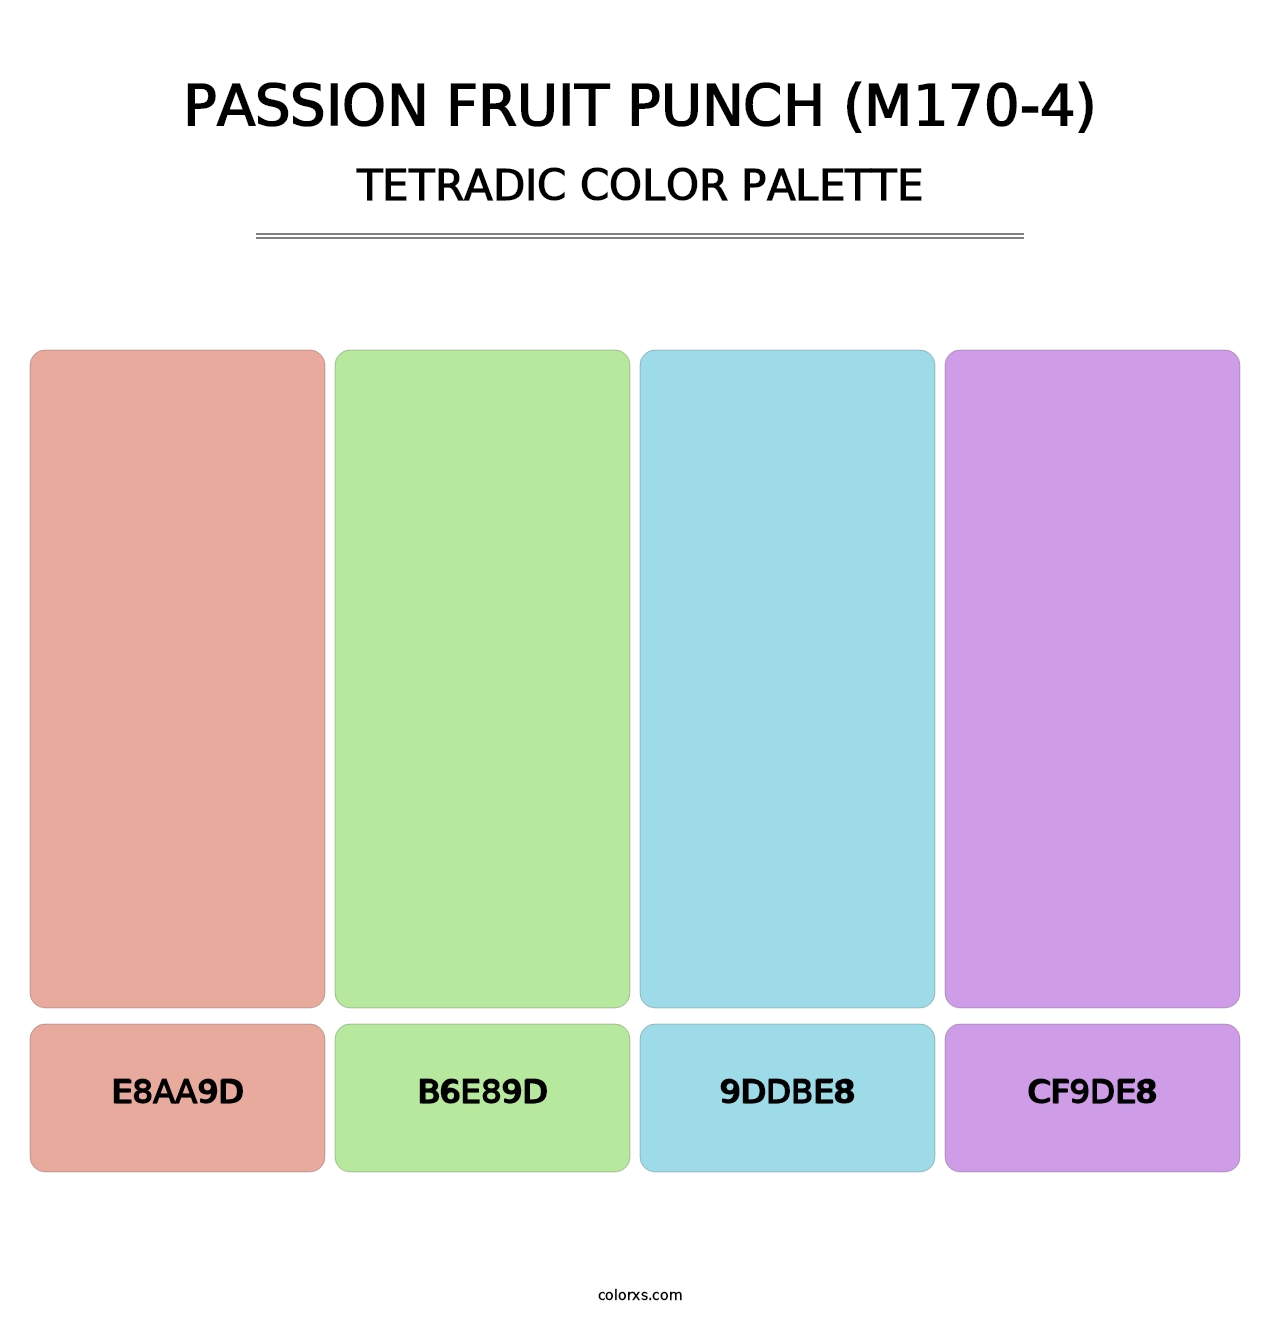 Passion Fruit Punch (M170-4) - Tetradic Color Palette